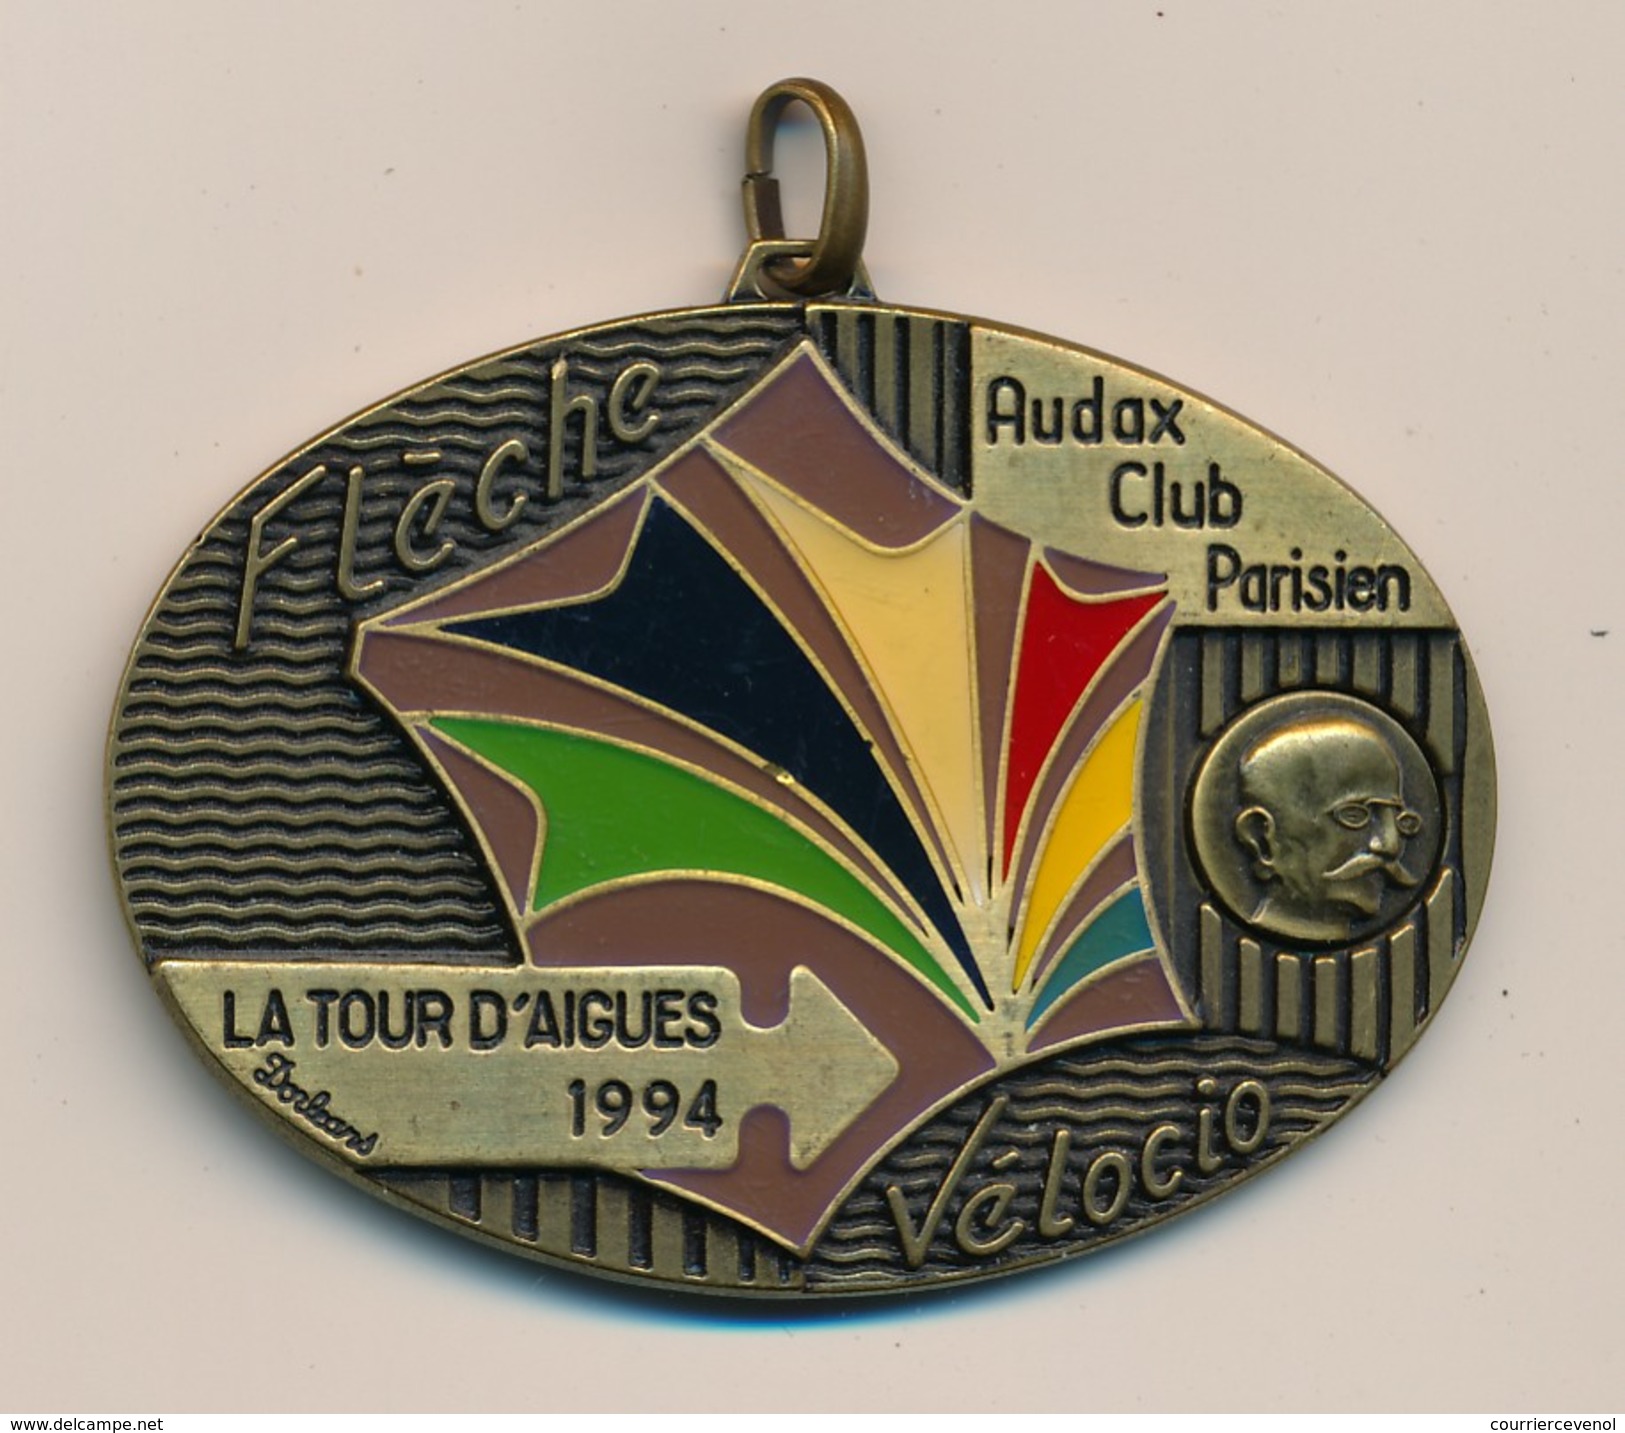 Médaille "Flèche Vélocio - La Tour D'Aigues 1994" - AUDAX CLUB PARISIEN - (Cyclotourisme) - Wielrennen